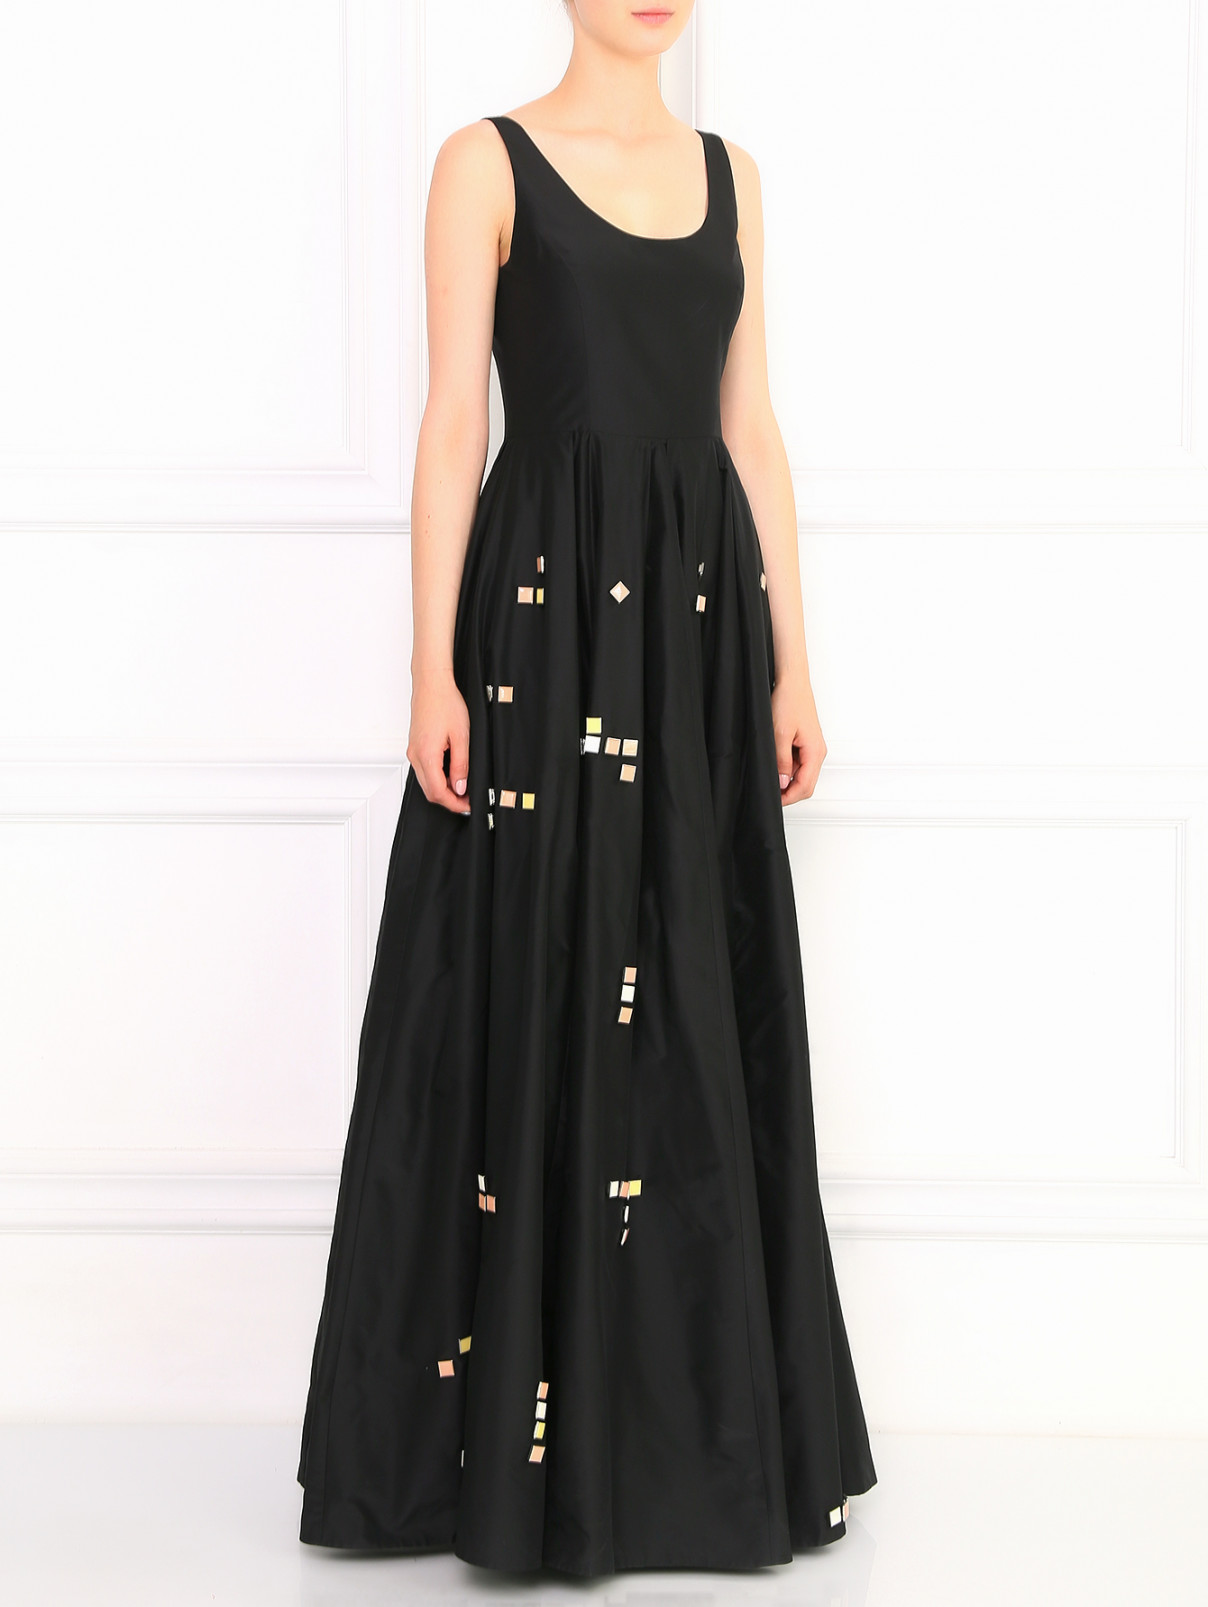 Платье-макси расшитое камнями Kira Plastinina  –  Модель Общий вид  – Цвет:  Черный